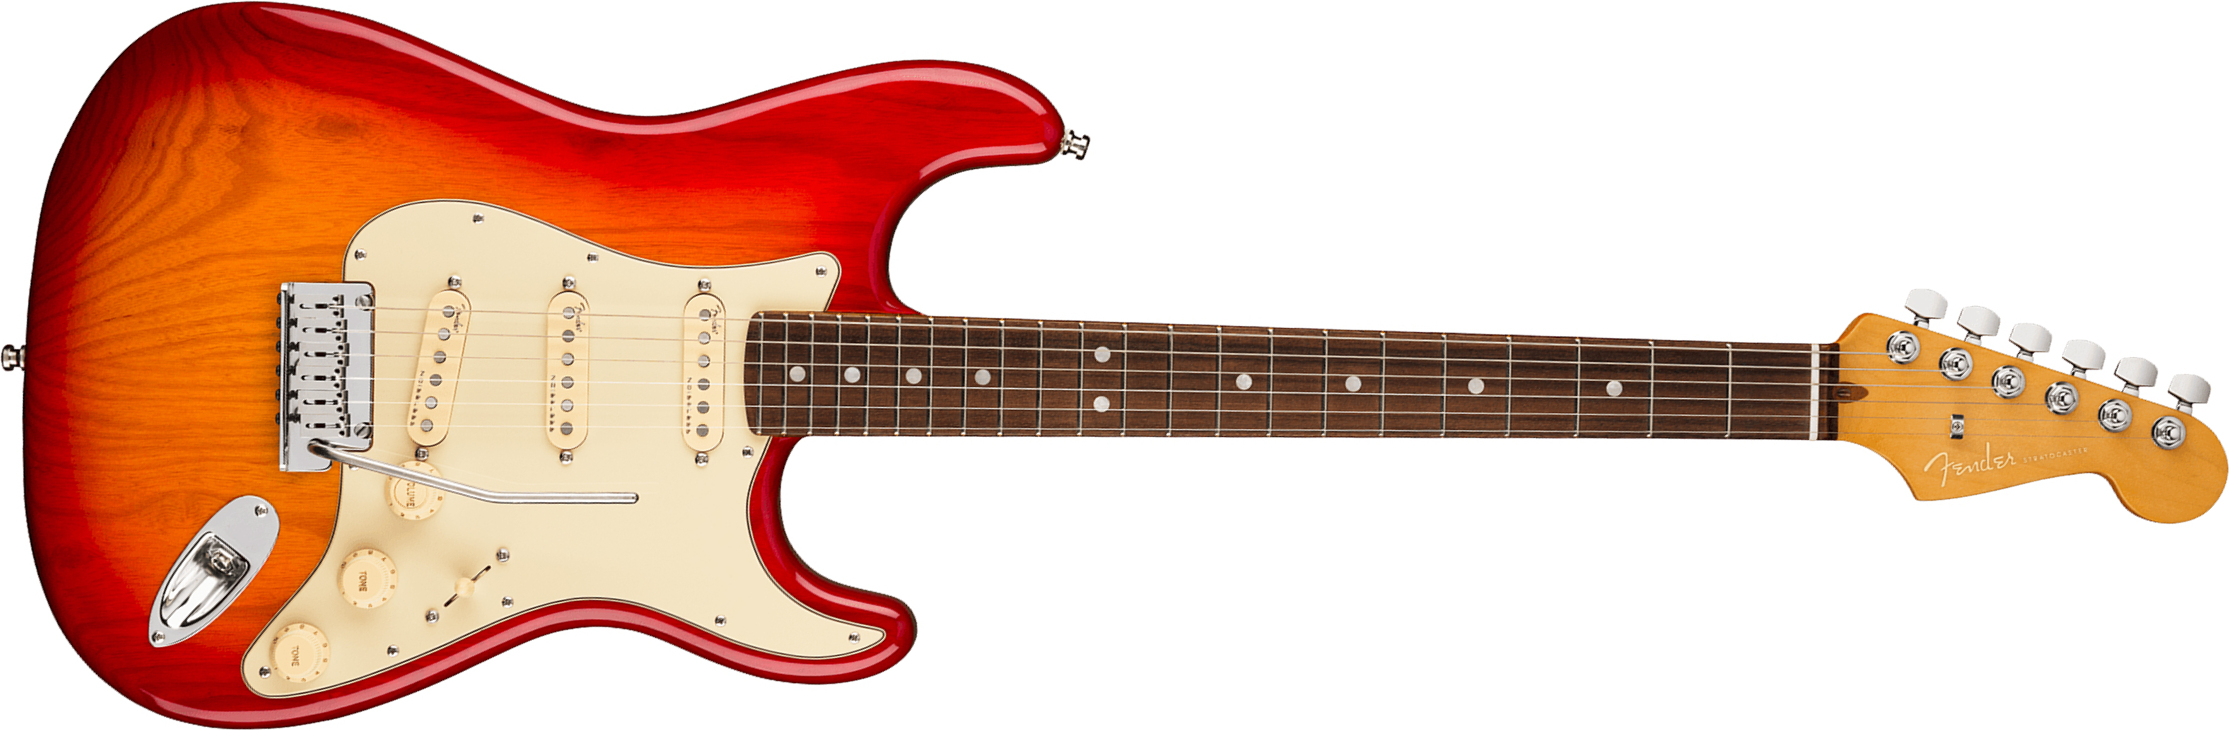 Fender Strat American Ultra Hss 2019 Usa Mn - Plasma Red Burst - Elektrische gitaar in Str-vorm - Main picture